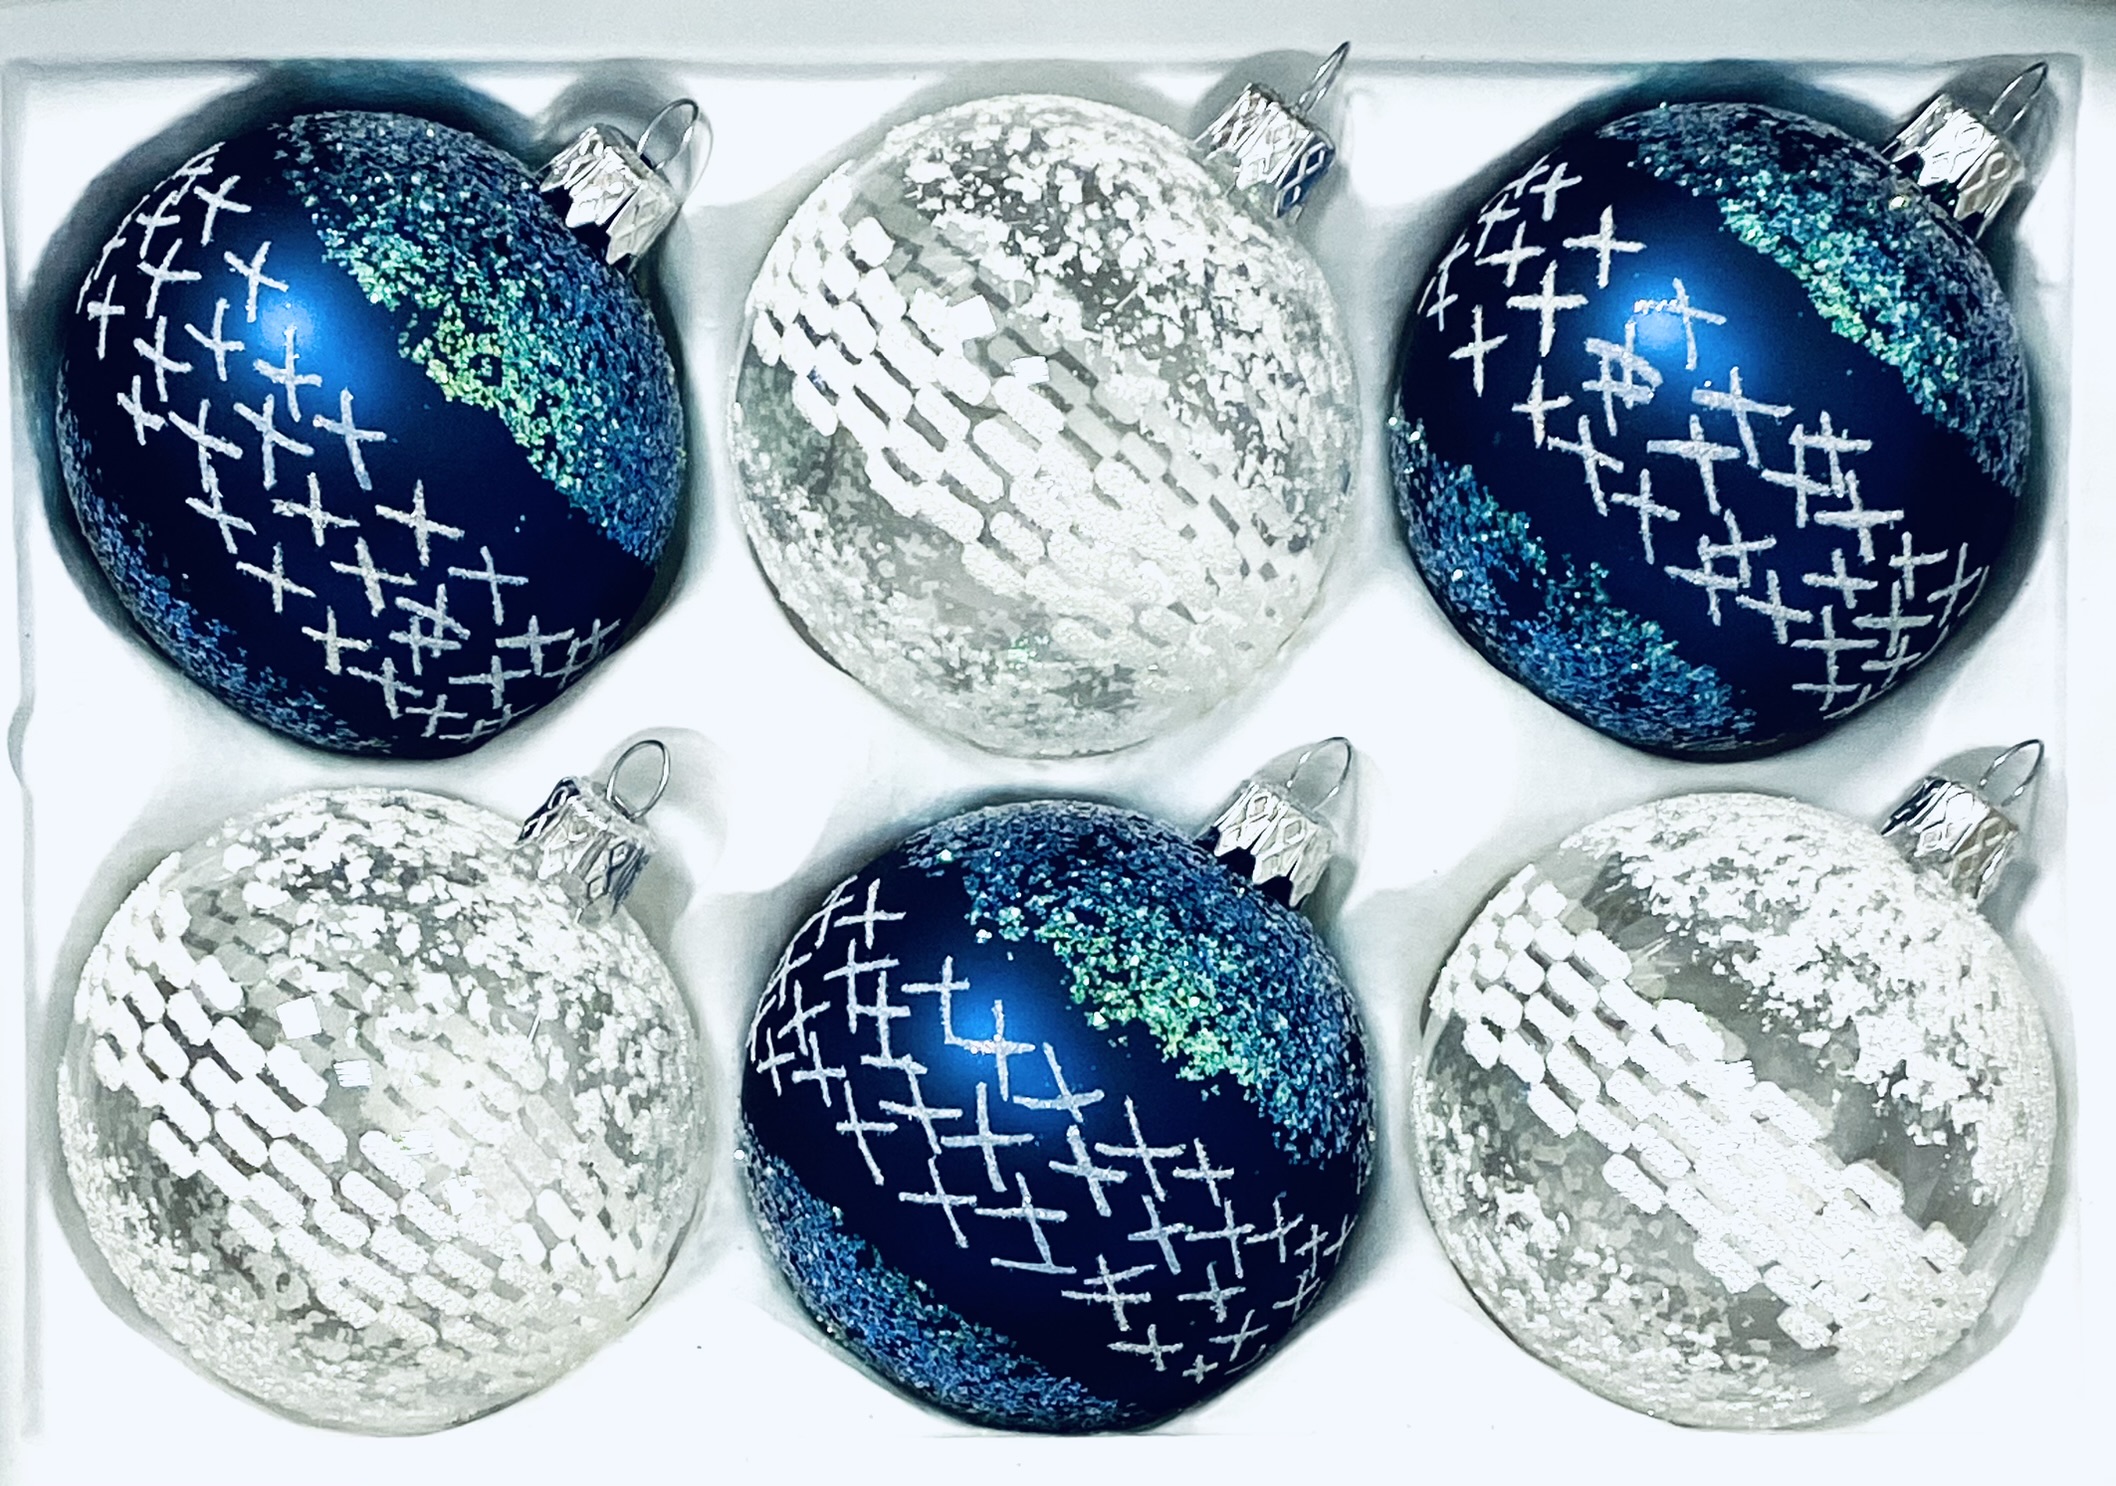 Aurélie Collection: Sada 6 skleněných vánočních koulí s dekorem Krása zimy , velikost 7 cm, čirá a modrá Balení: 6 ks, Barva: modrá;čirá, Velikost: 7…